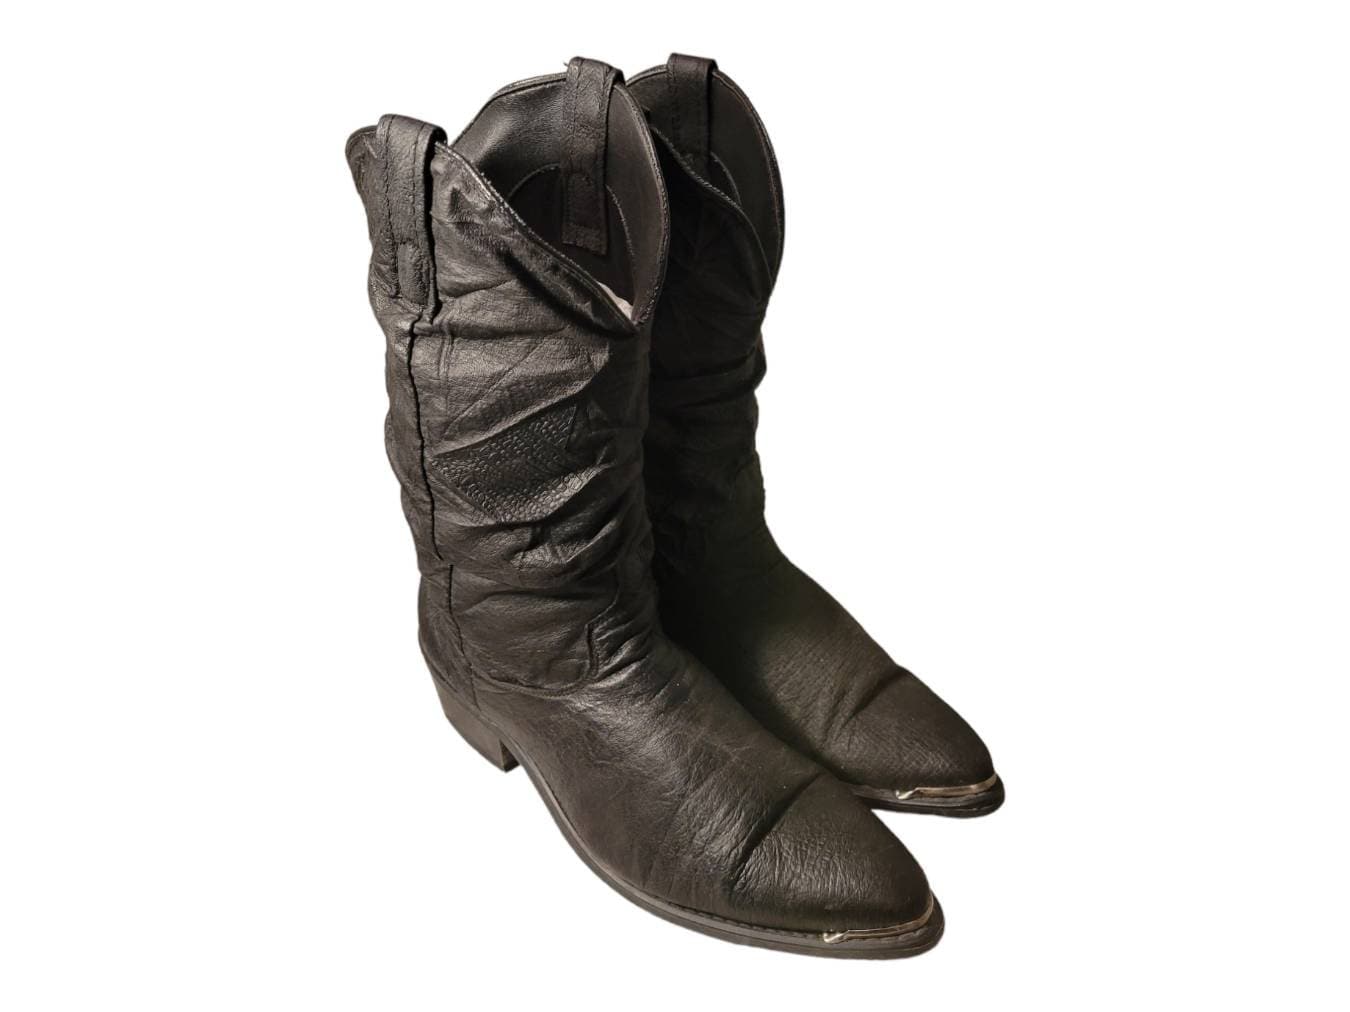 Verbergen Amerika Poort Dingo 15240 Slouch Cowboy Boots Black Pigskin Leather Western - Etsy Denmark